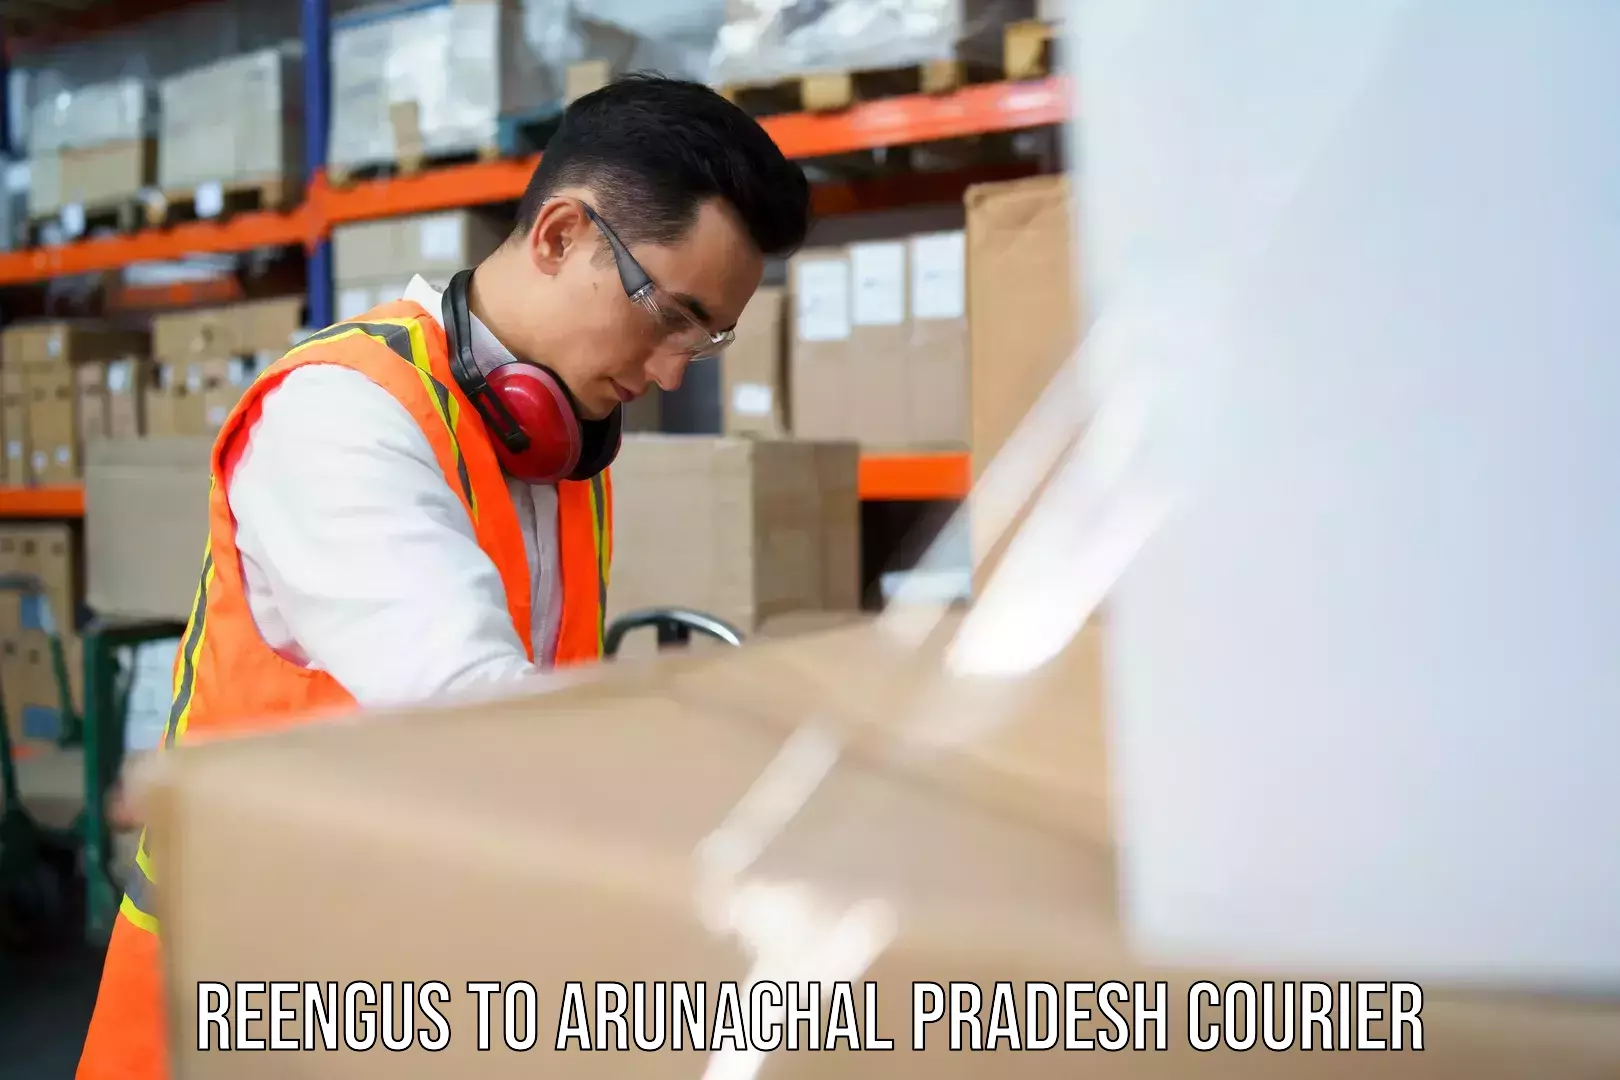 Urban courier service Reengus to Arunachal Pradesh